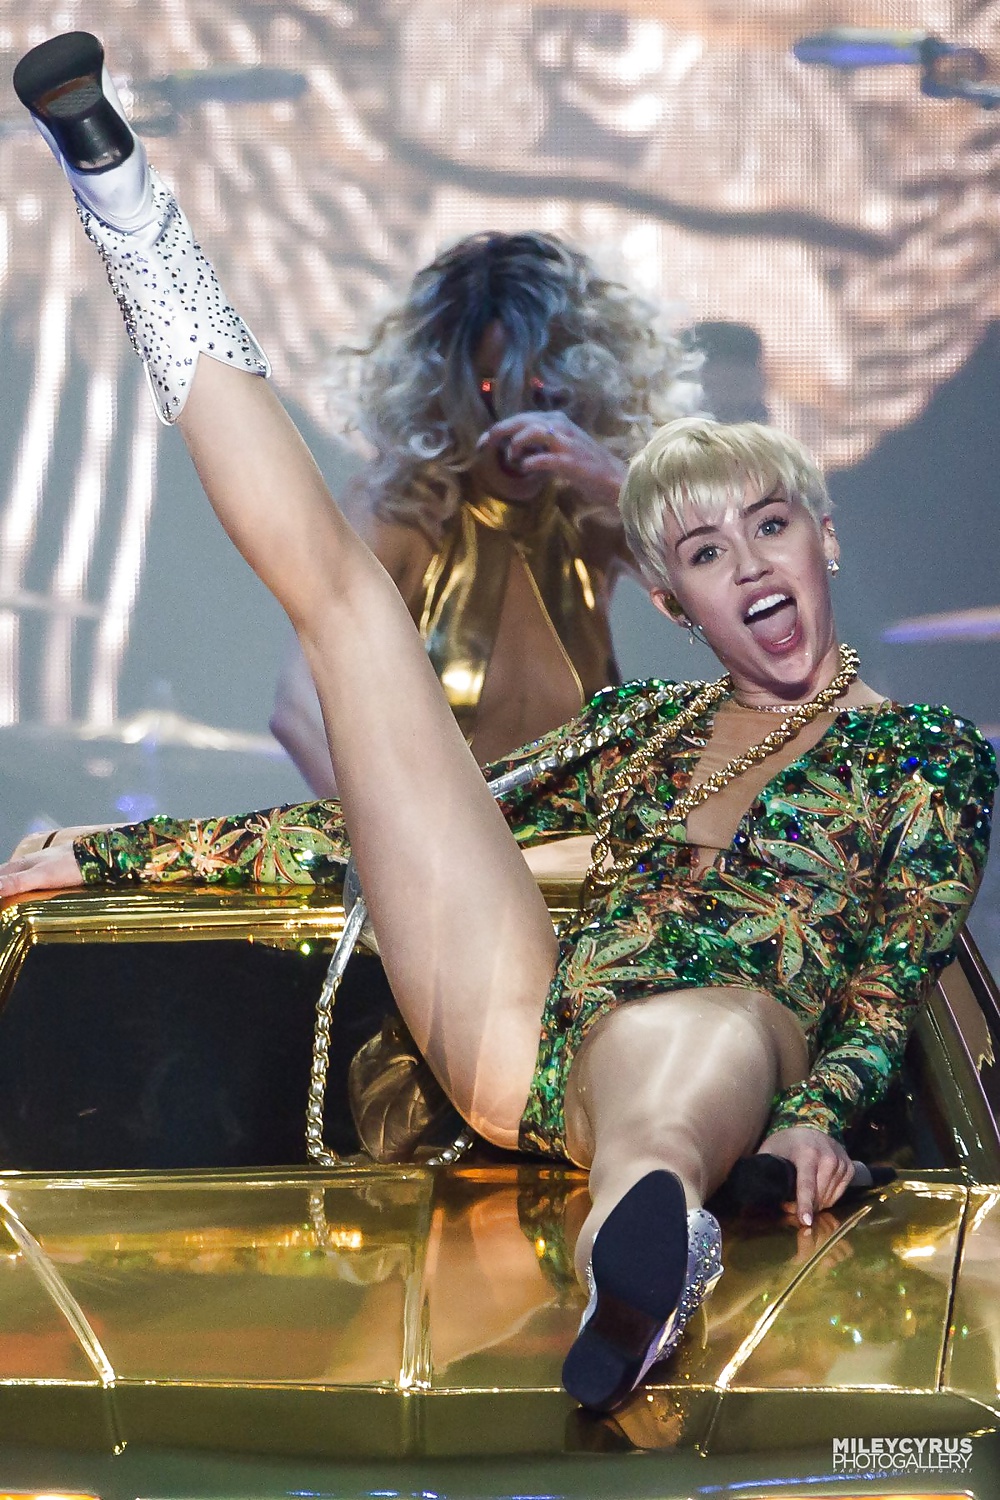 Miley Cyrus - Schmutzige Schlampe Für Einen Harten Fick #24439842